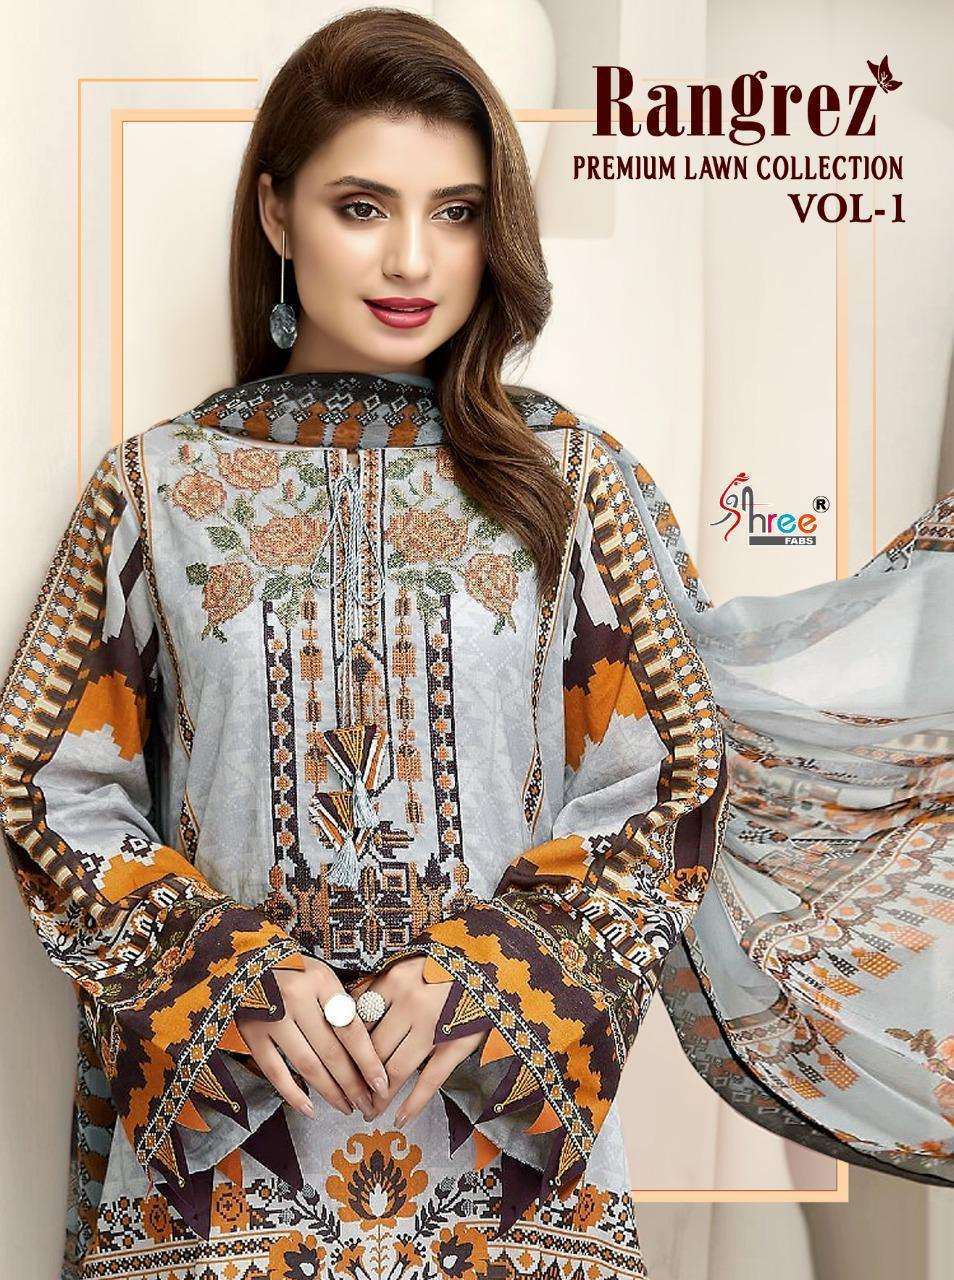 Shree Fabs rangrezz Premium Lawn Collection Vol 1 Pakistani Suit